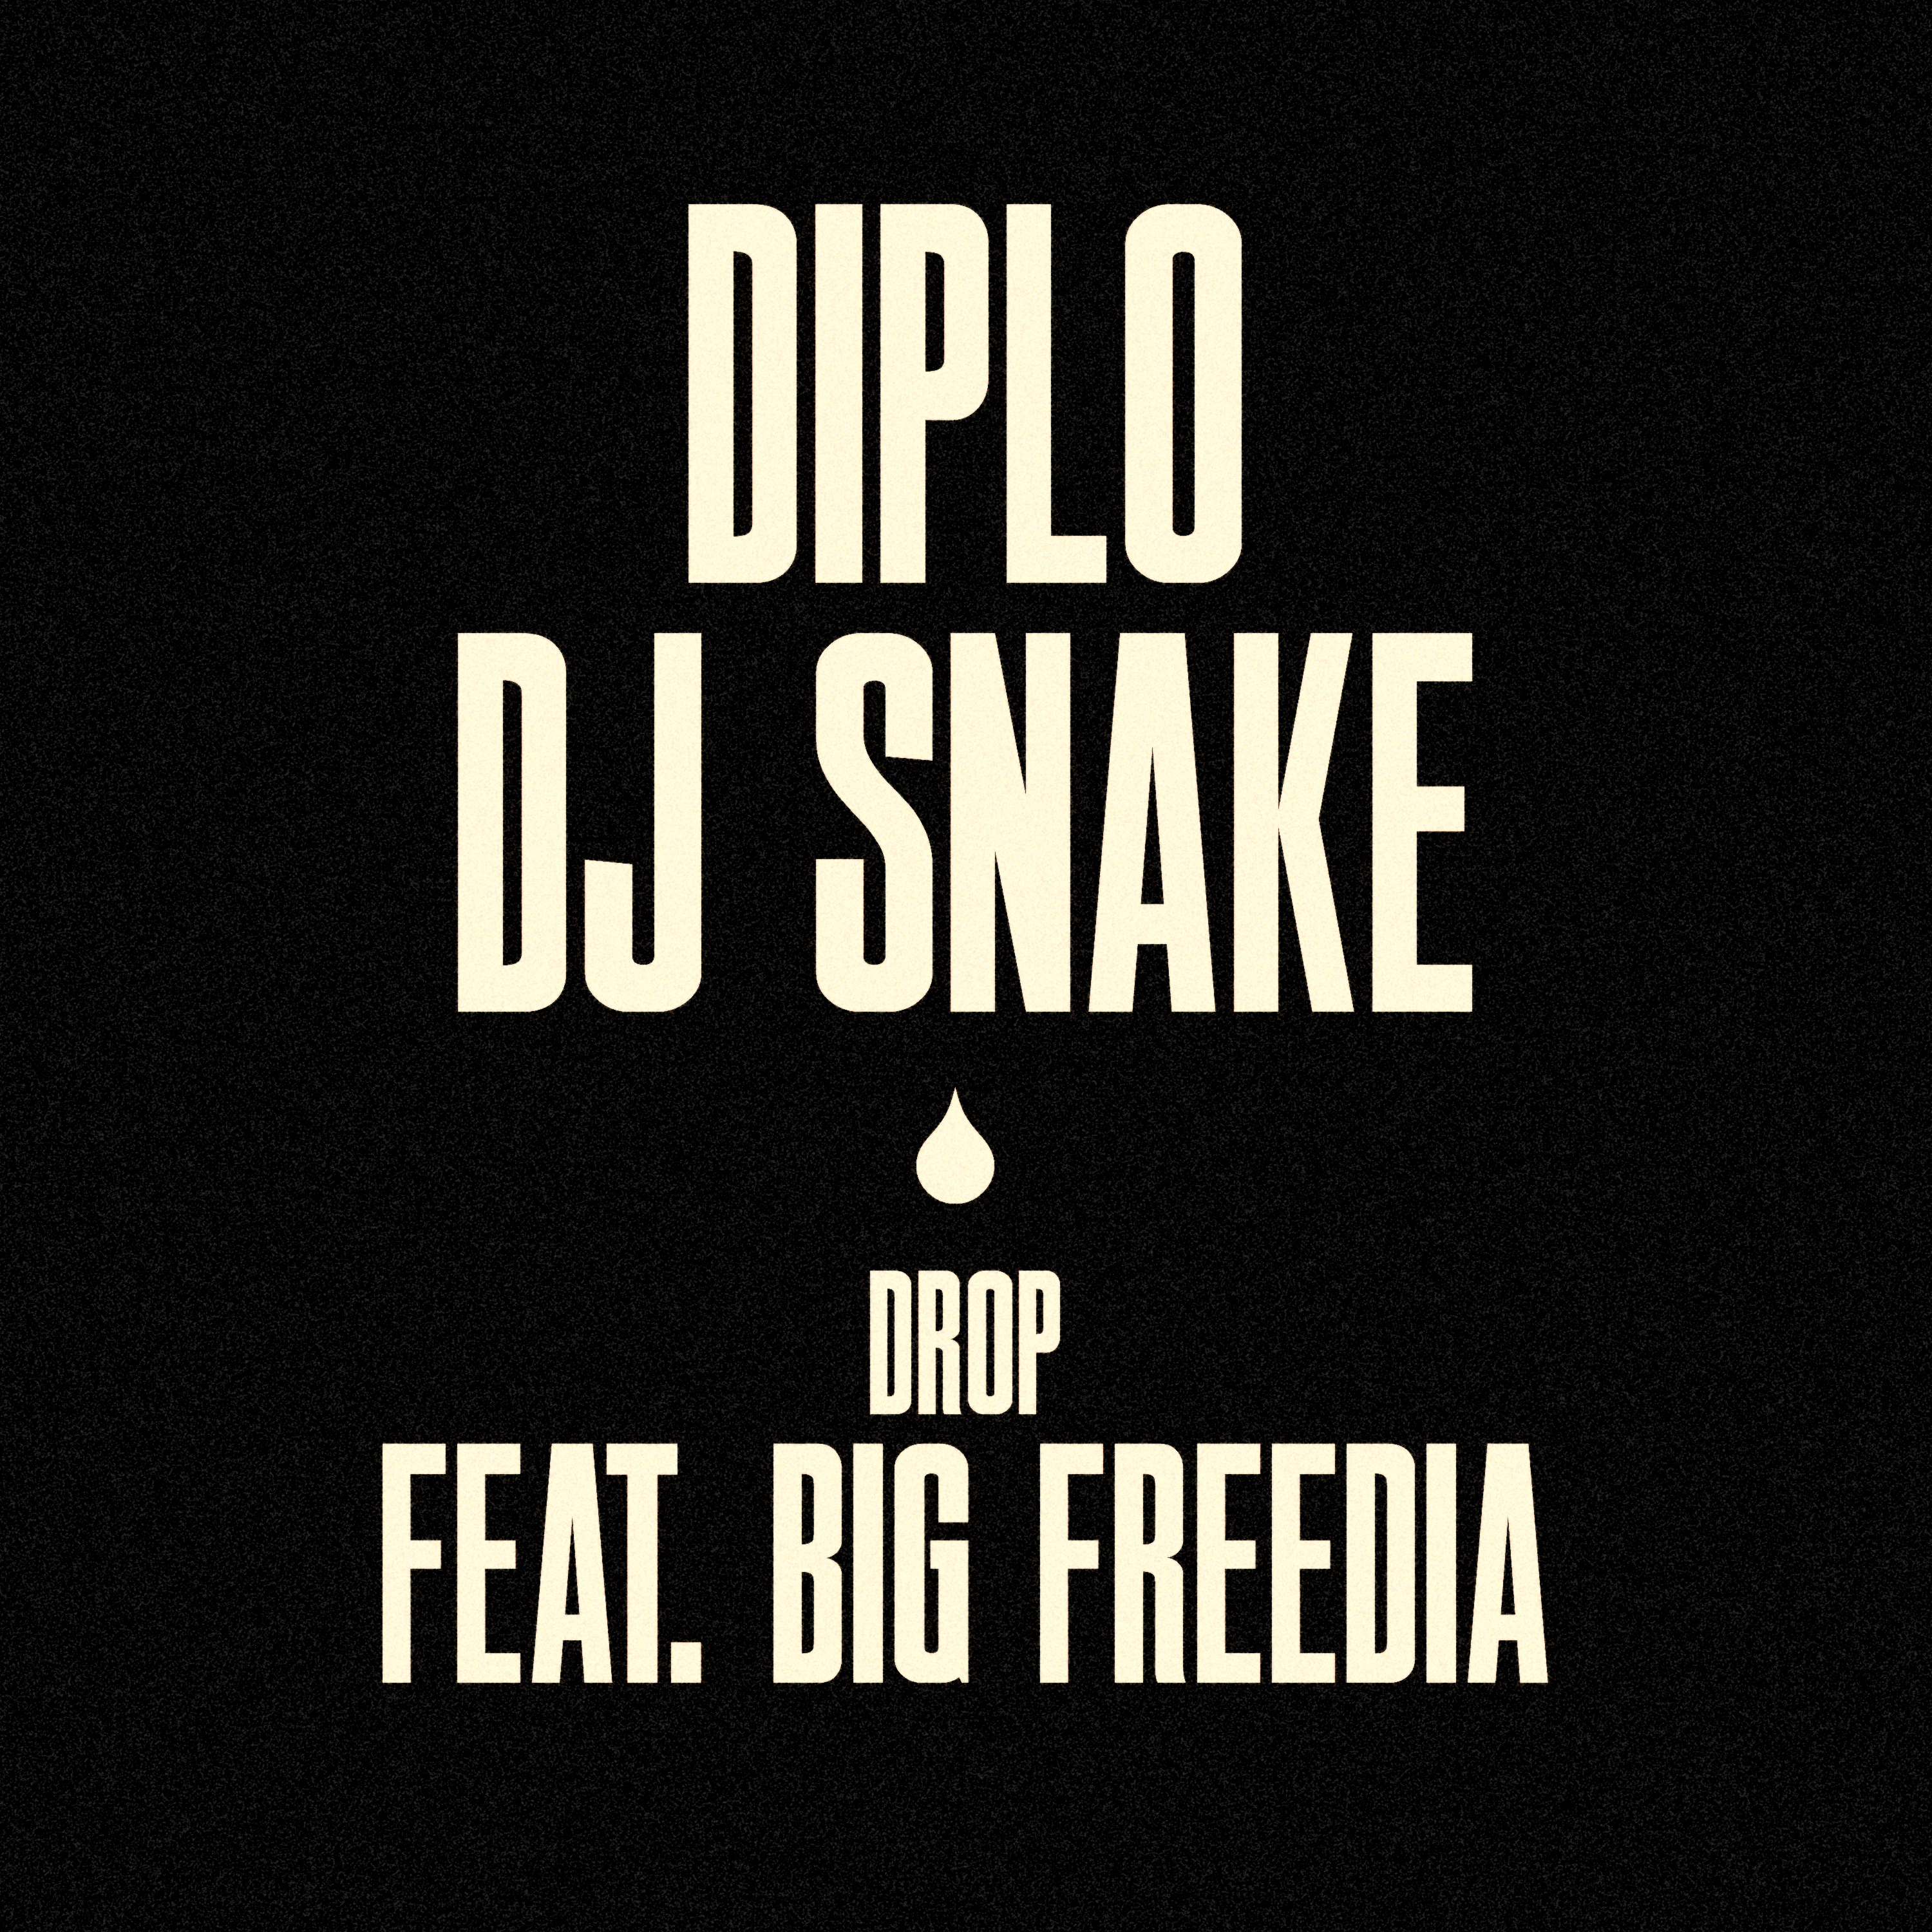 הורד Diplo & DJ Snake - Drop (feat. Big Freedia)